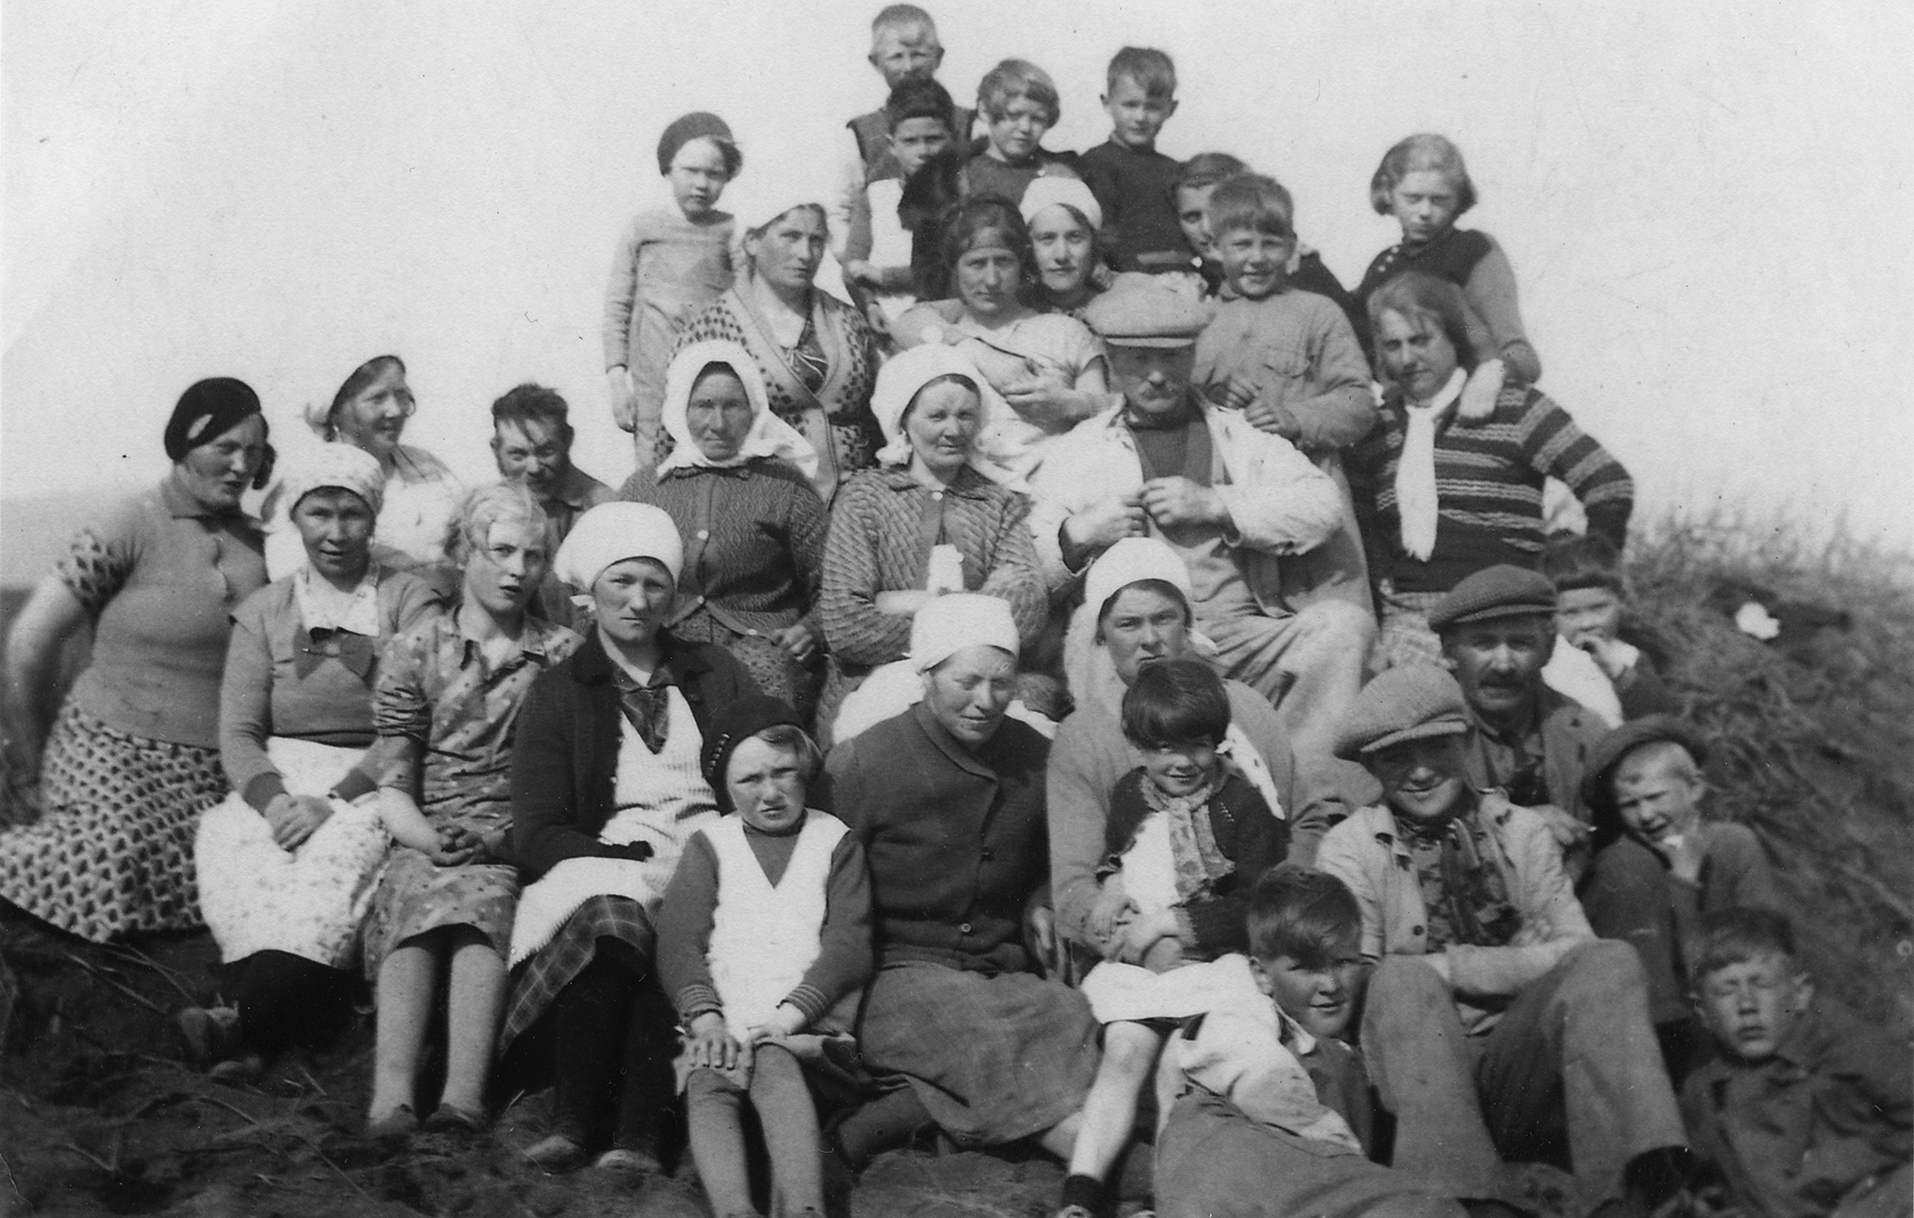 Hópmynd -melskurður í sandgræðslunni við Eyrarbakka árið 1935 - Ljósmynd Finnbogi Guðmundsson